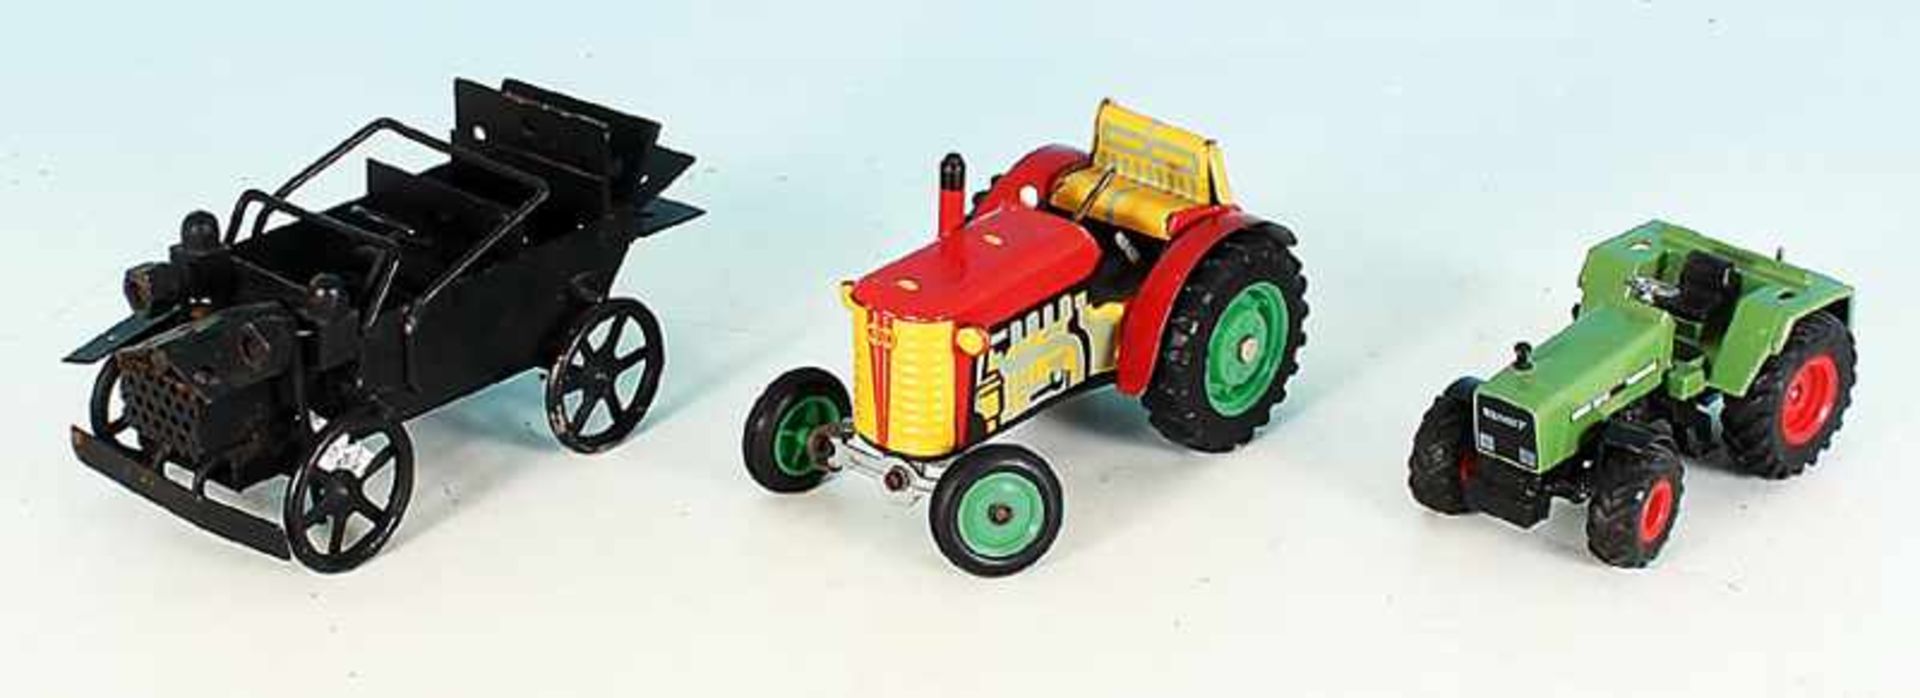 2 Spielzeug-Traktoren